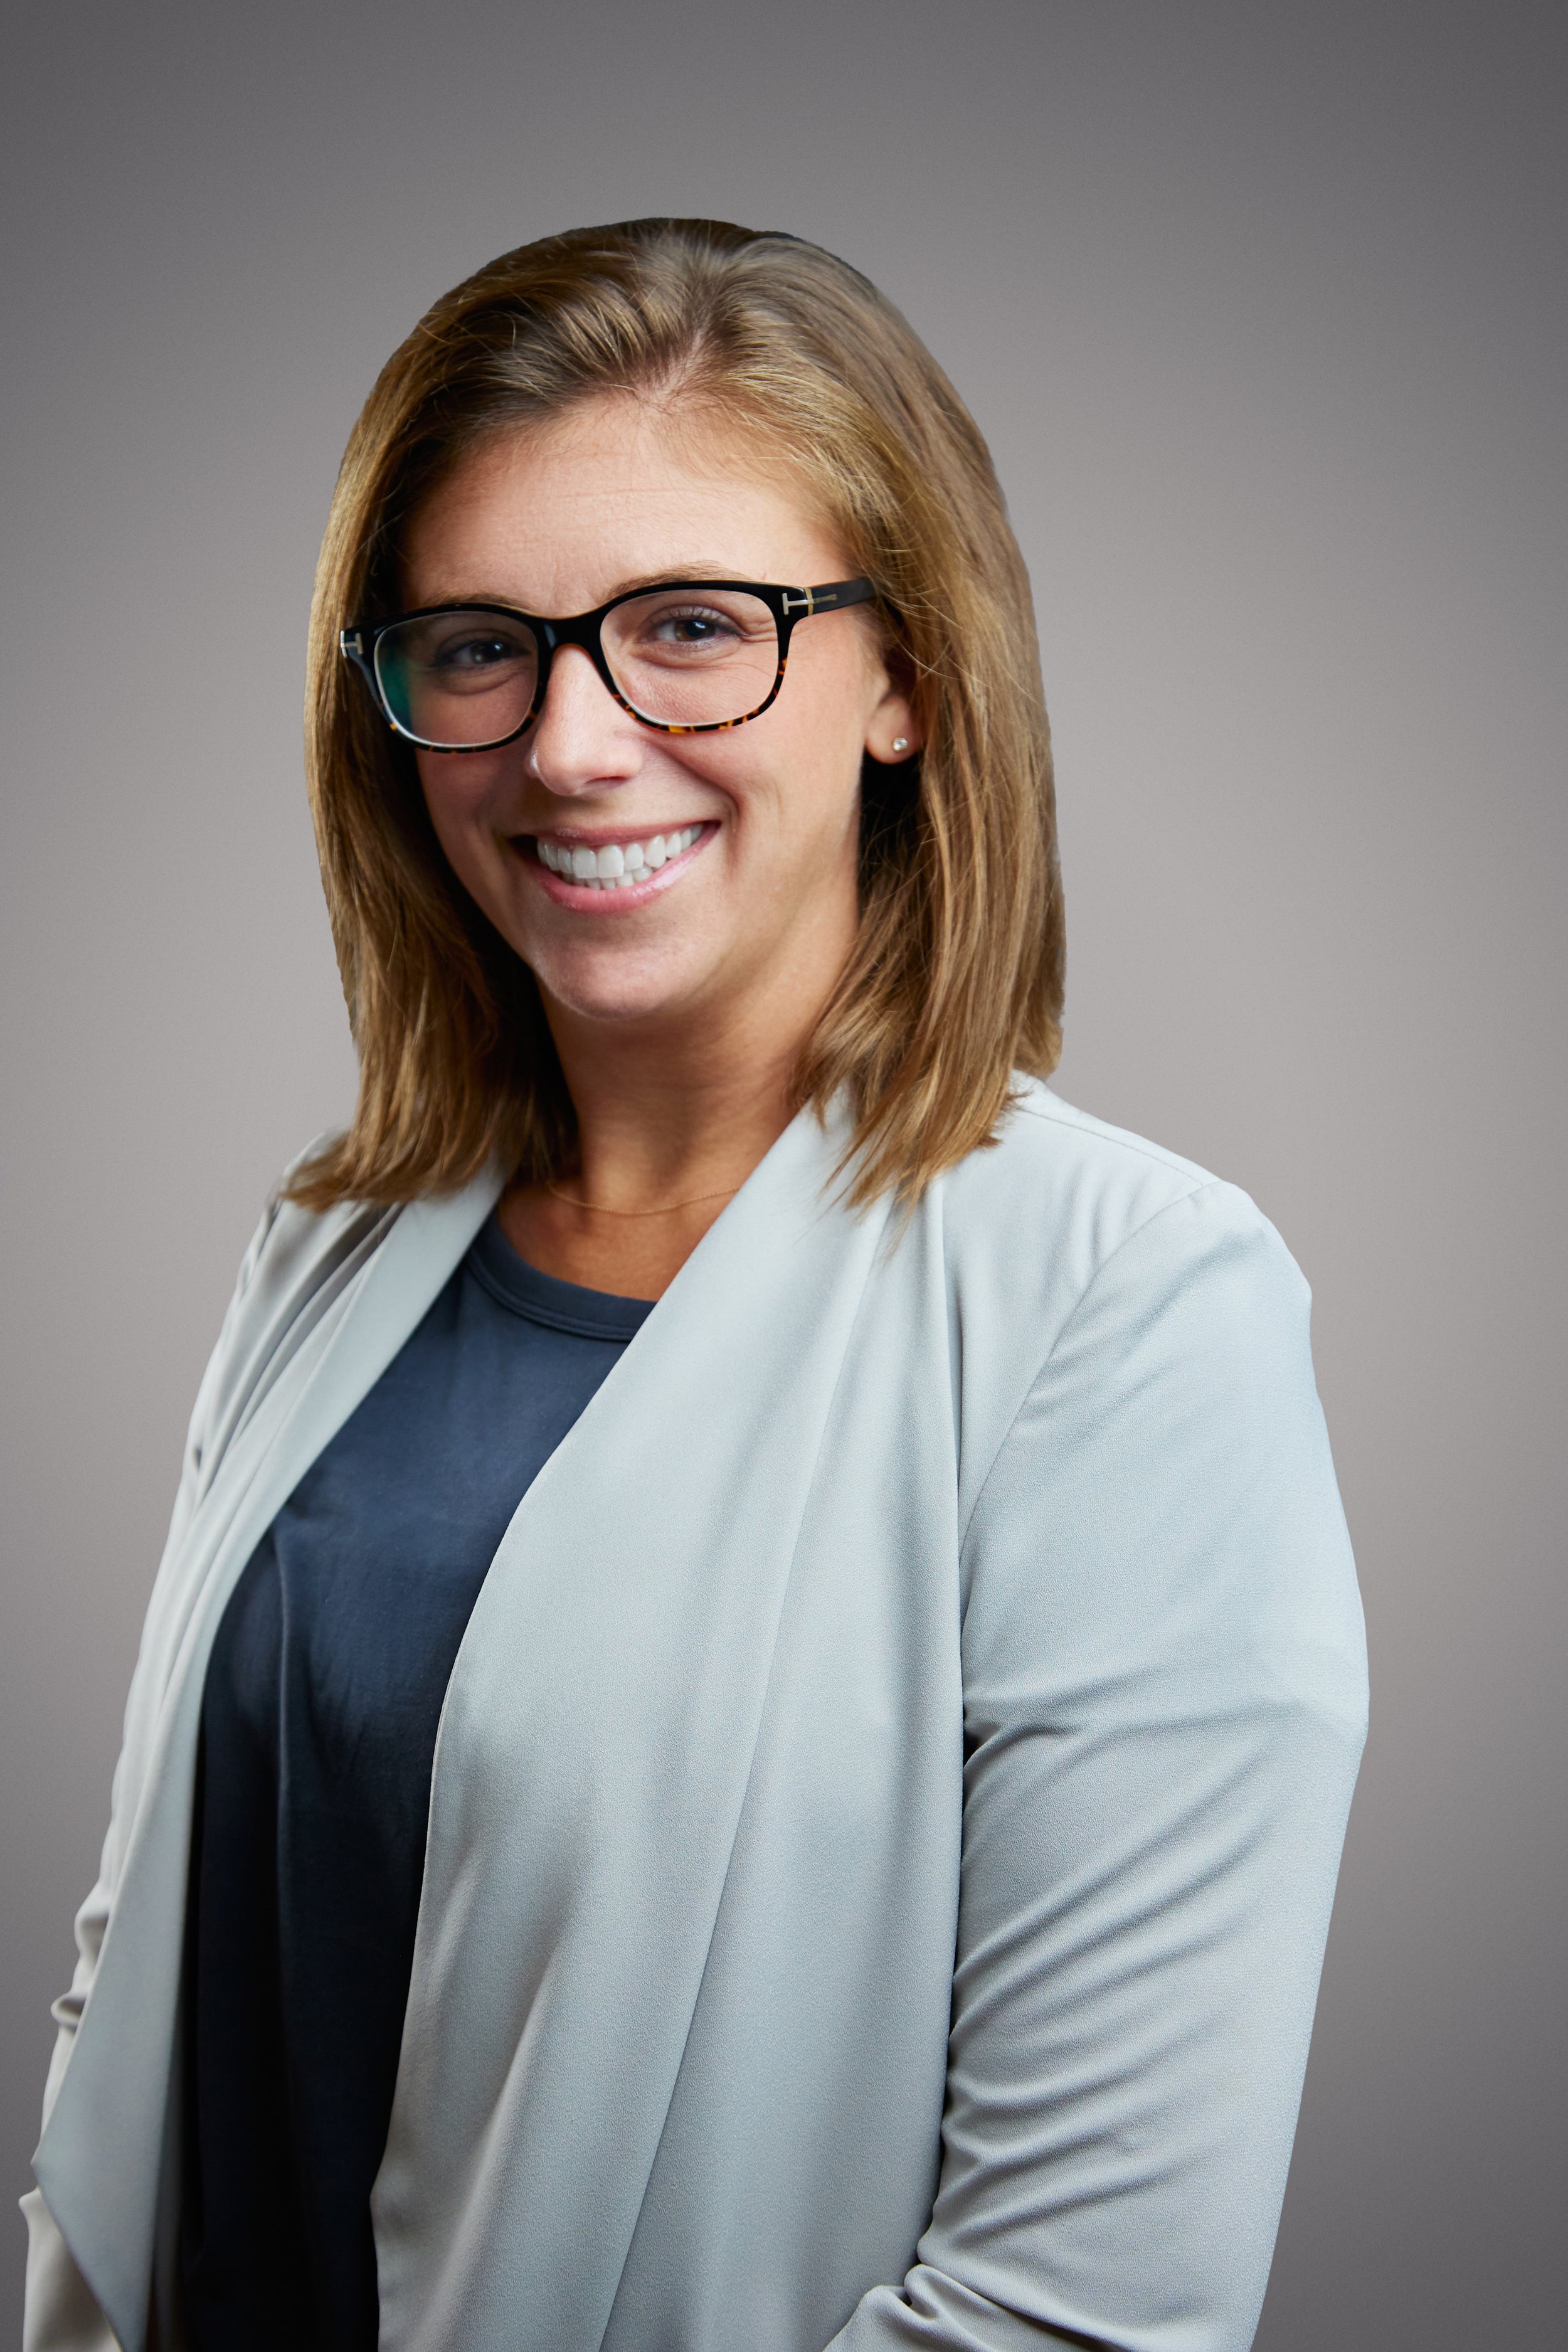 Lindsay Burger - Director of Supplier Diversity Services